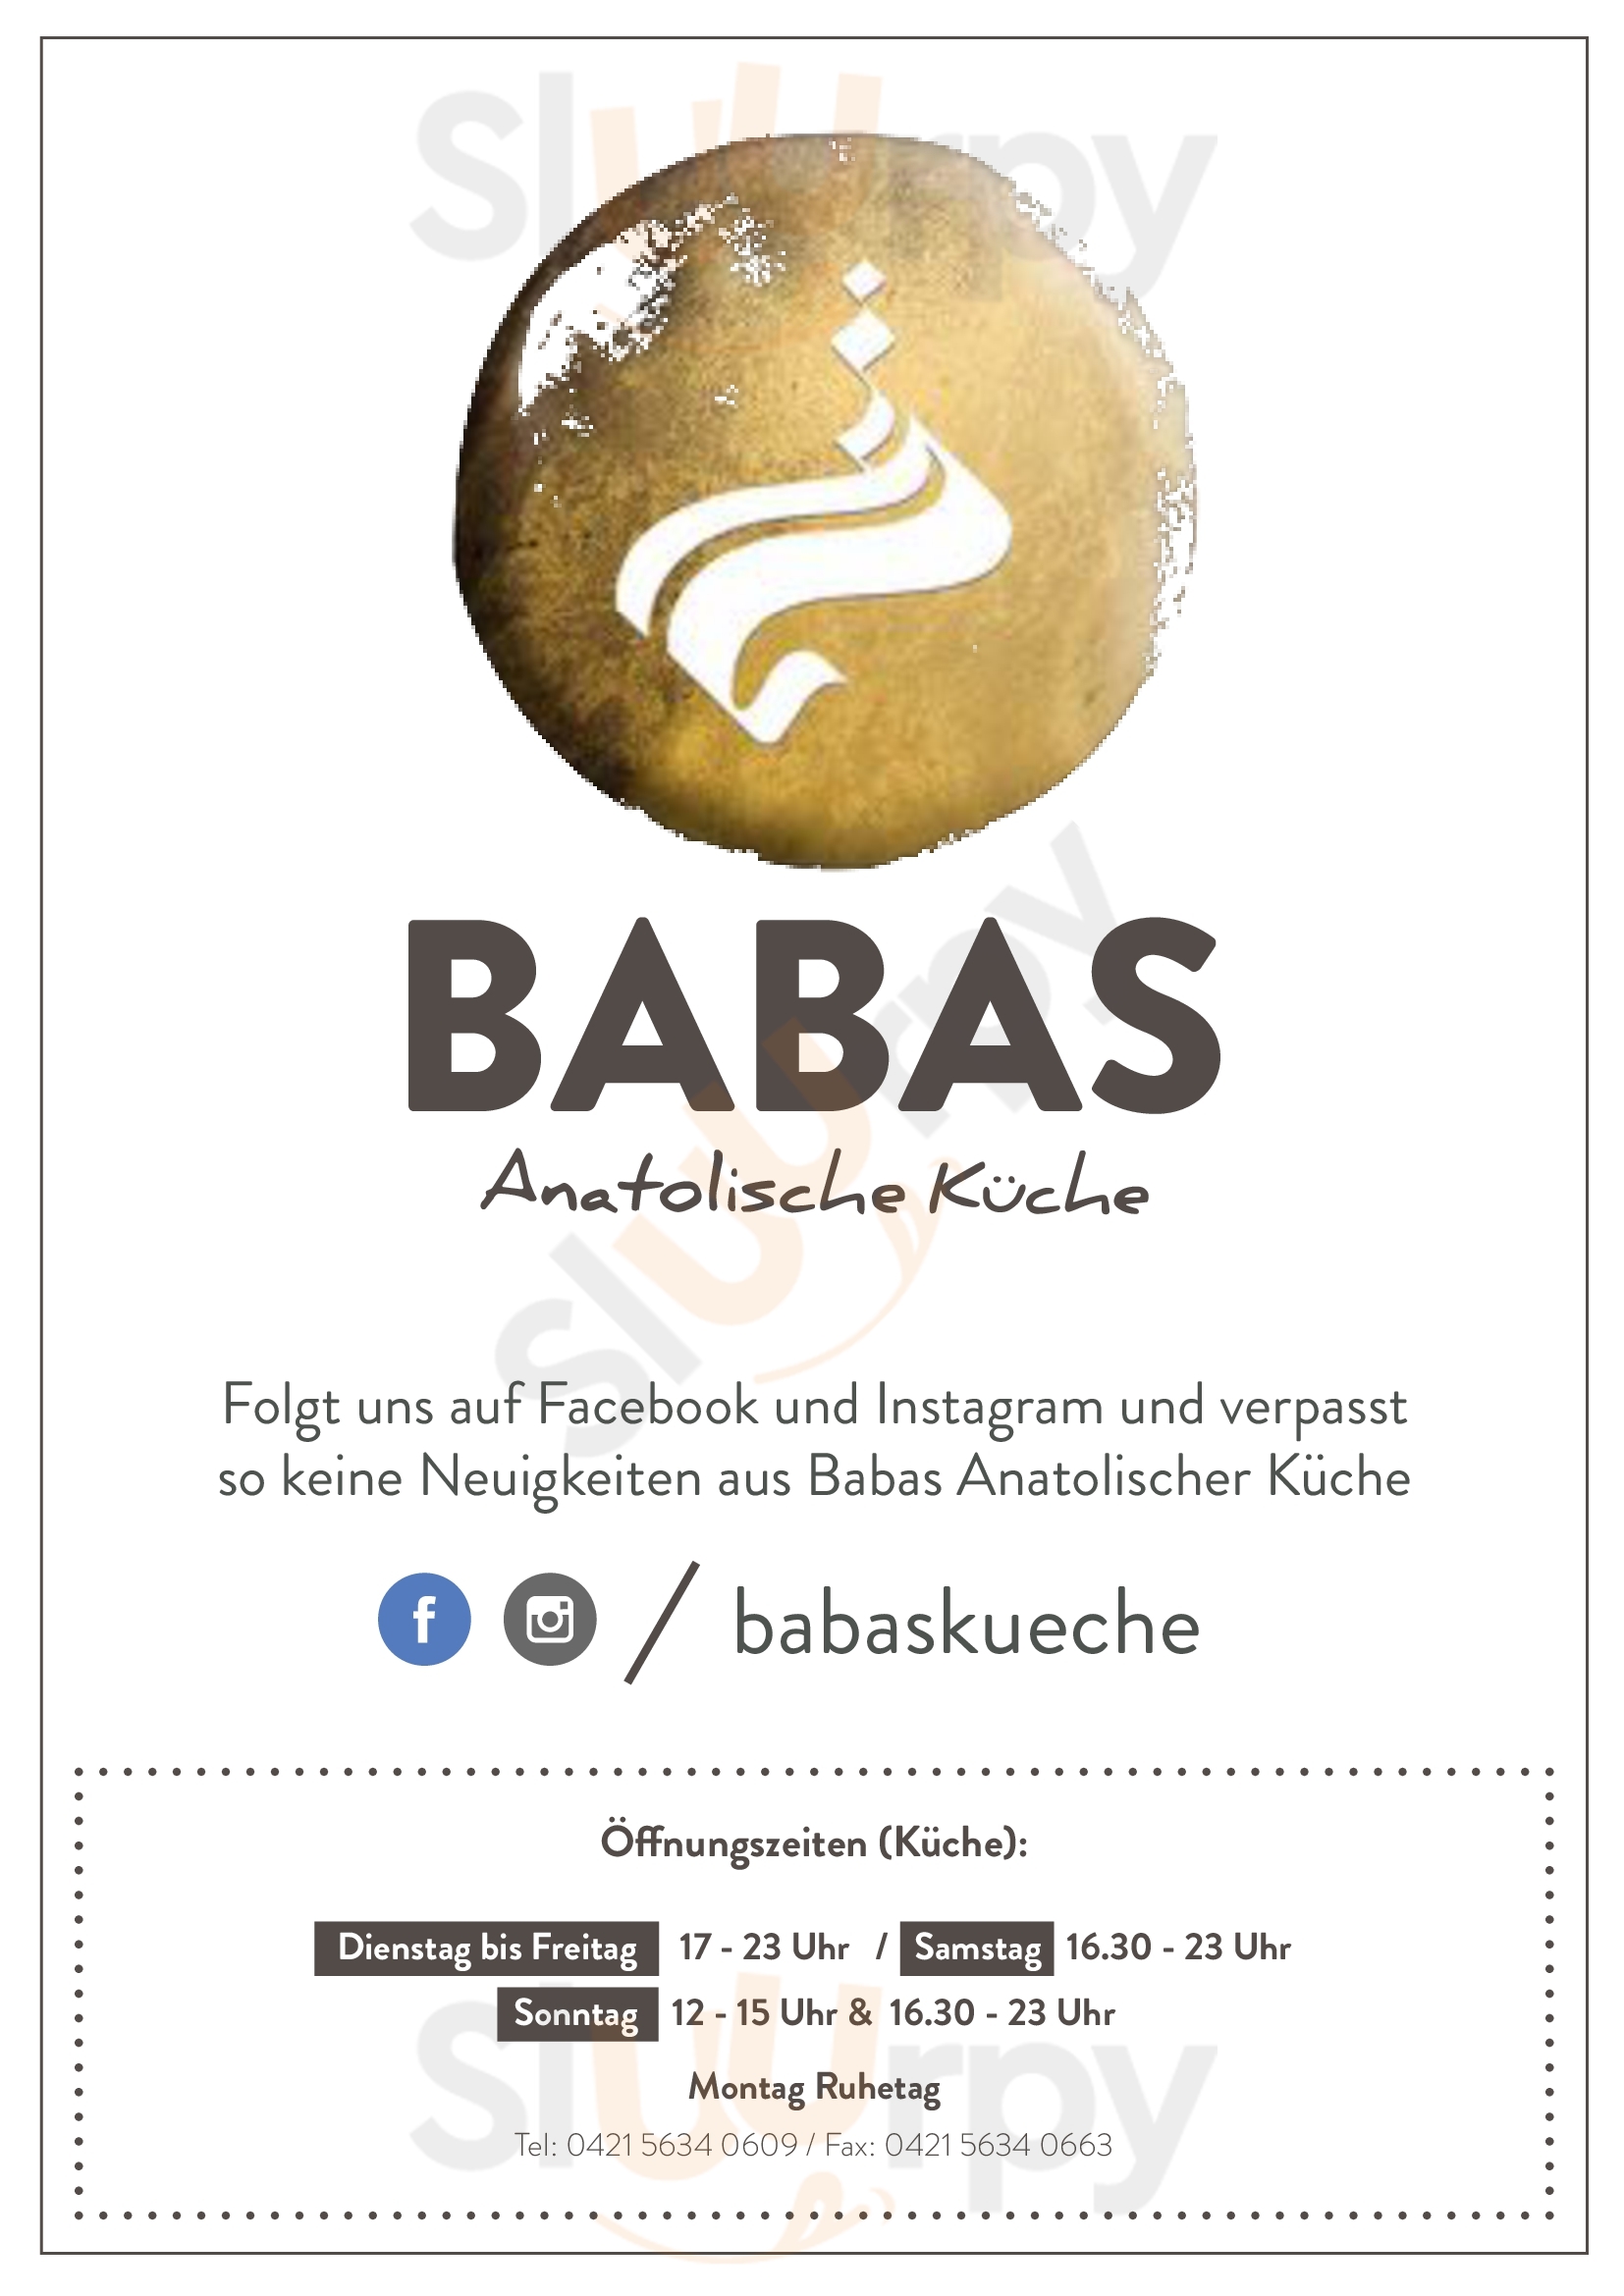 Babas - Anatolische Küche Bremen Menu - 1